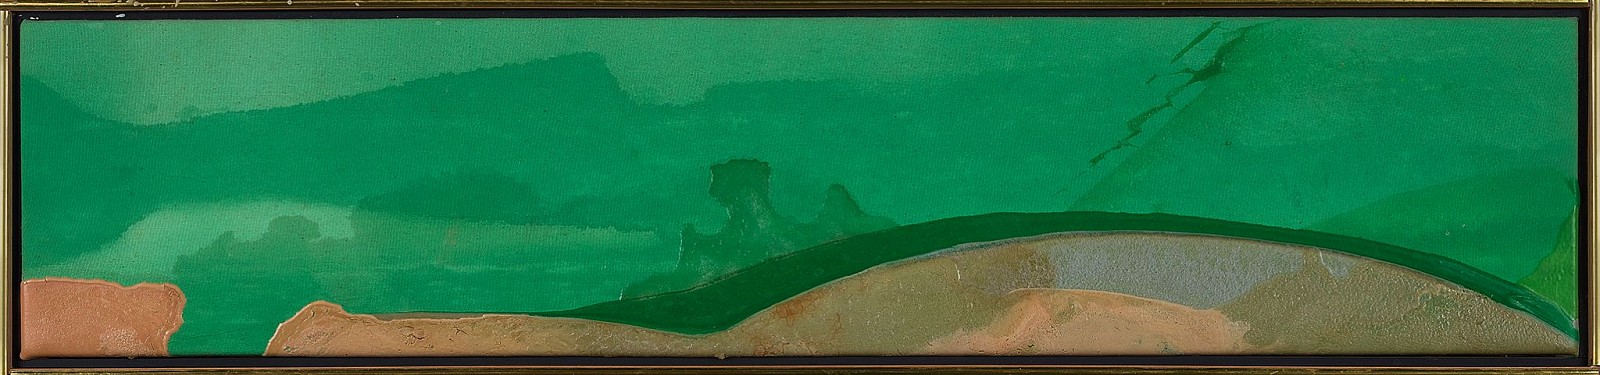 Walter Darby Bannard, Greenough, 1979
Acrylic on canvas, 9 x 42 in. (22.9 x 106.7 cm)
BAN-00111